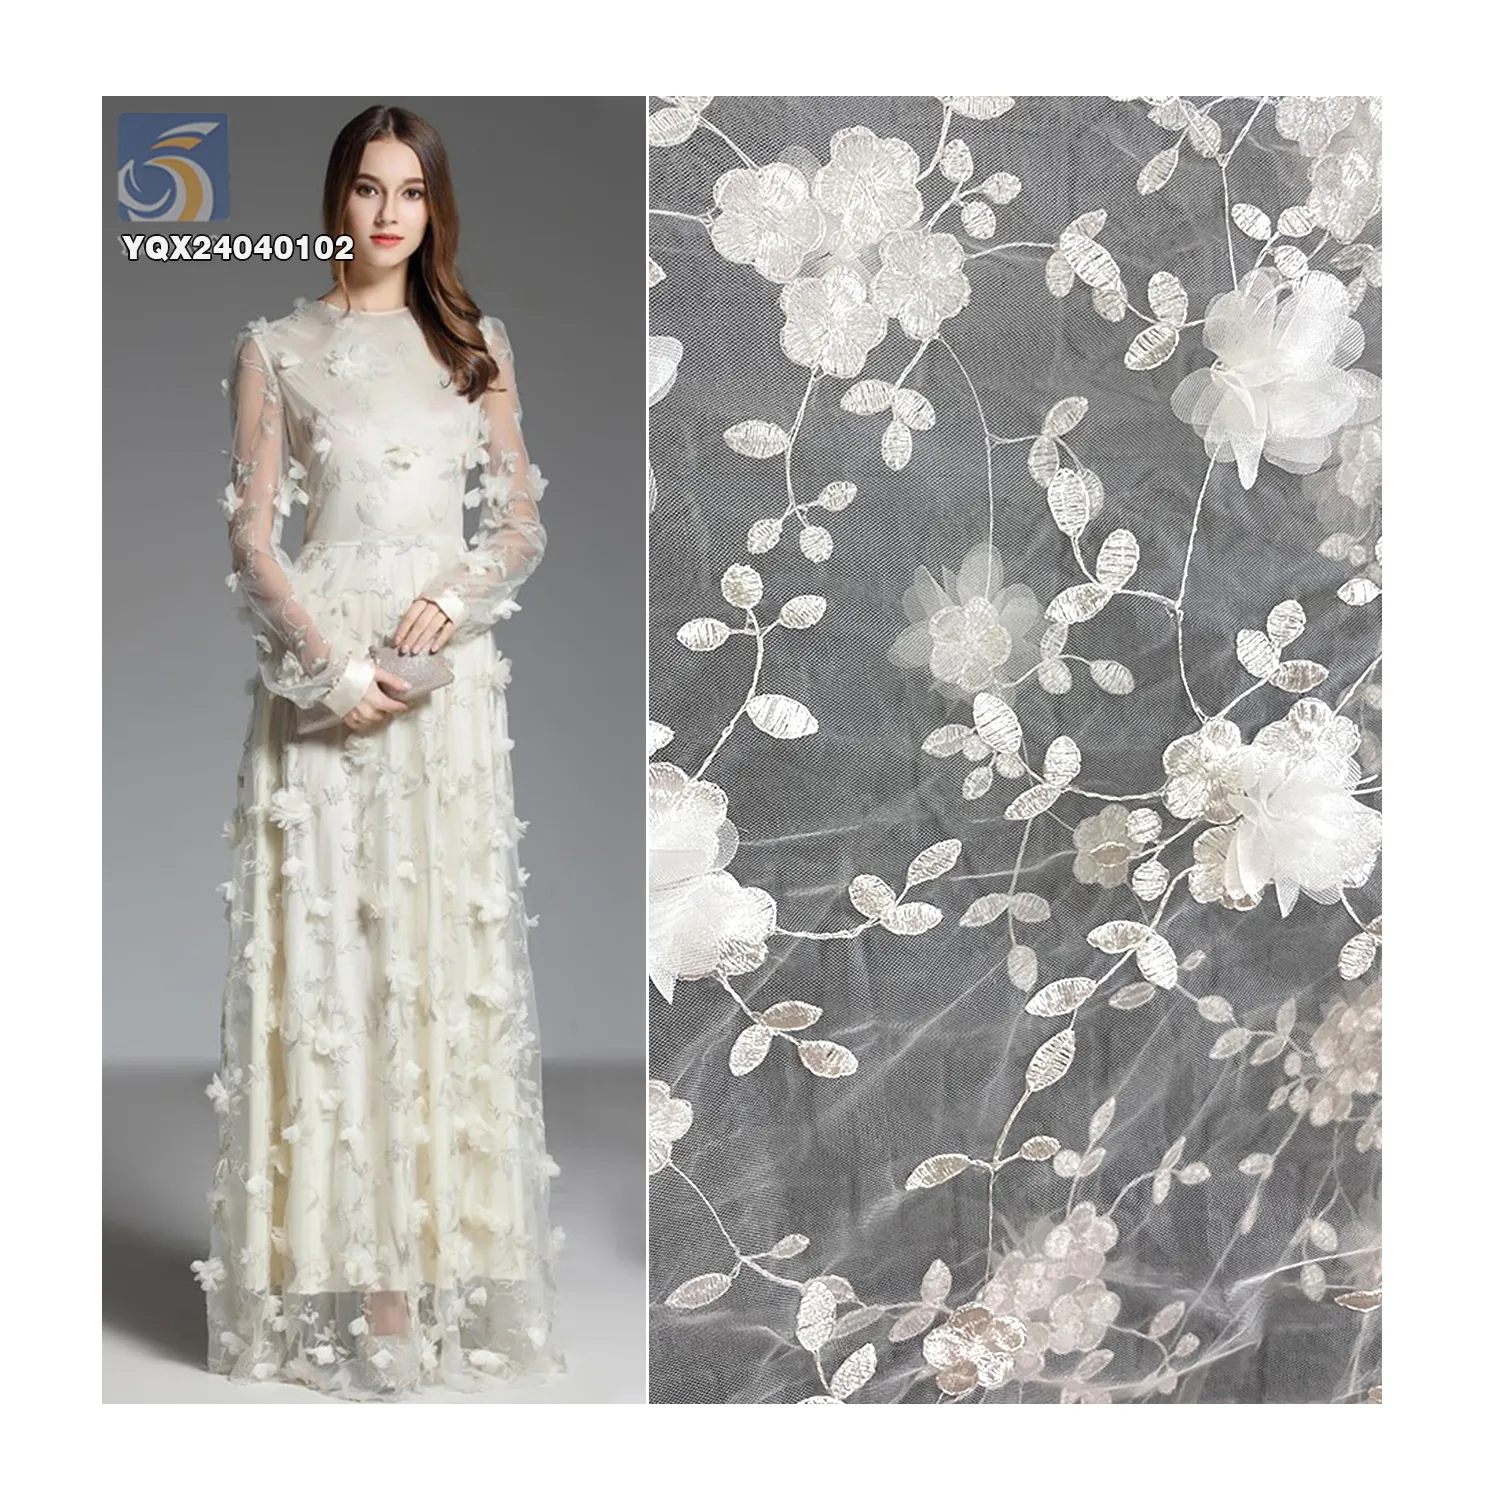 Çin'den toptan 3D dantel çiçek kumaş yeni tasarım işlemeli çiçekler Polyester örgü elbiseler için düşük fiyat